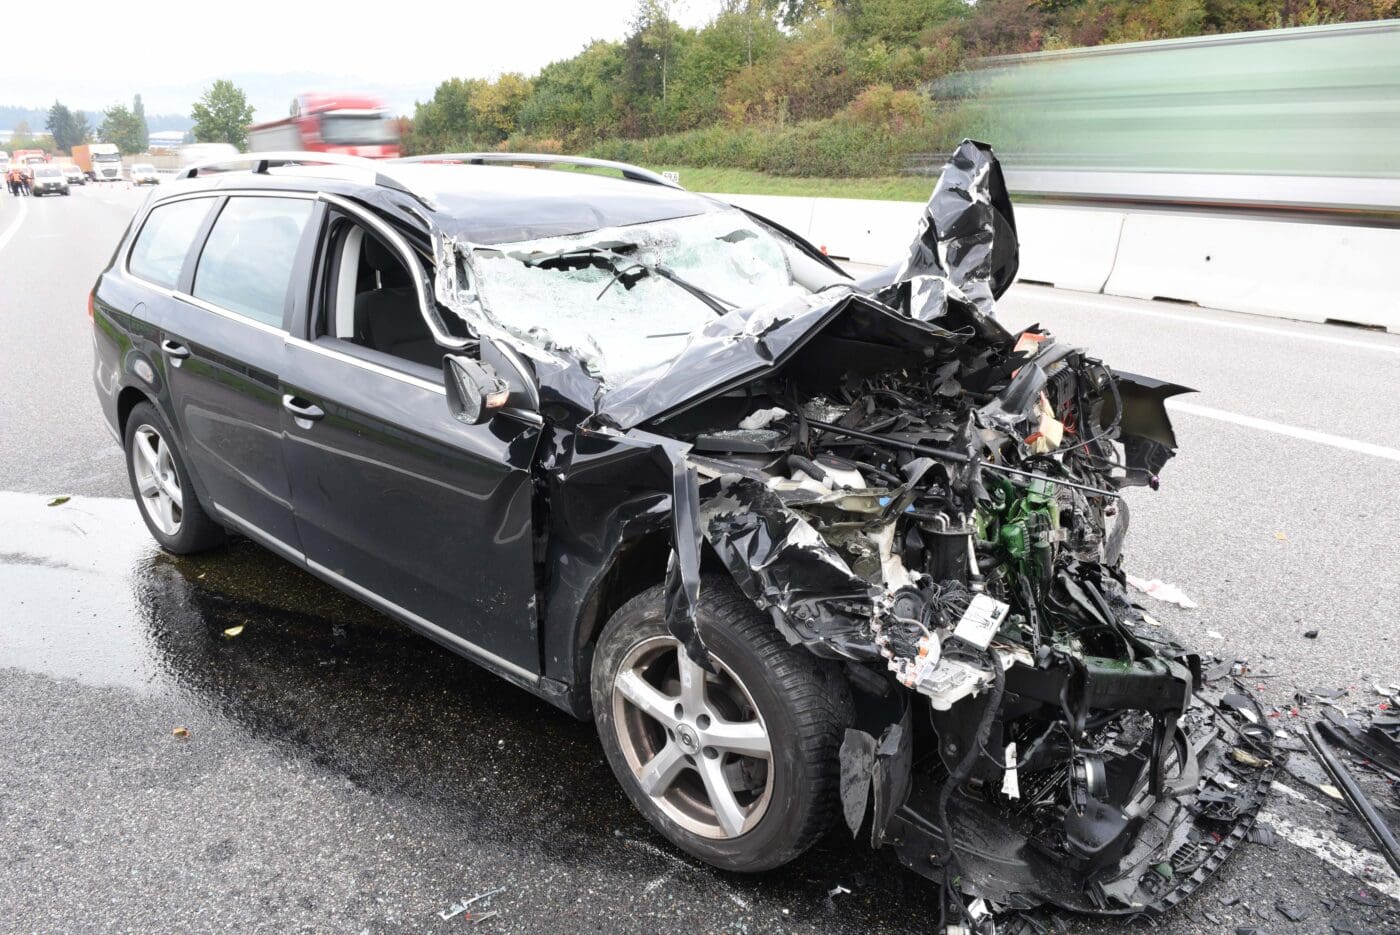 Verkehrsunfall auf Autobahn – eine Person verletzt